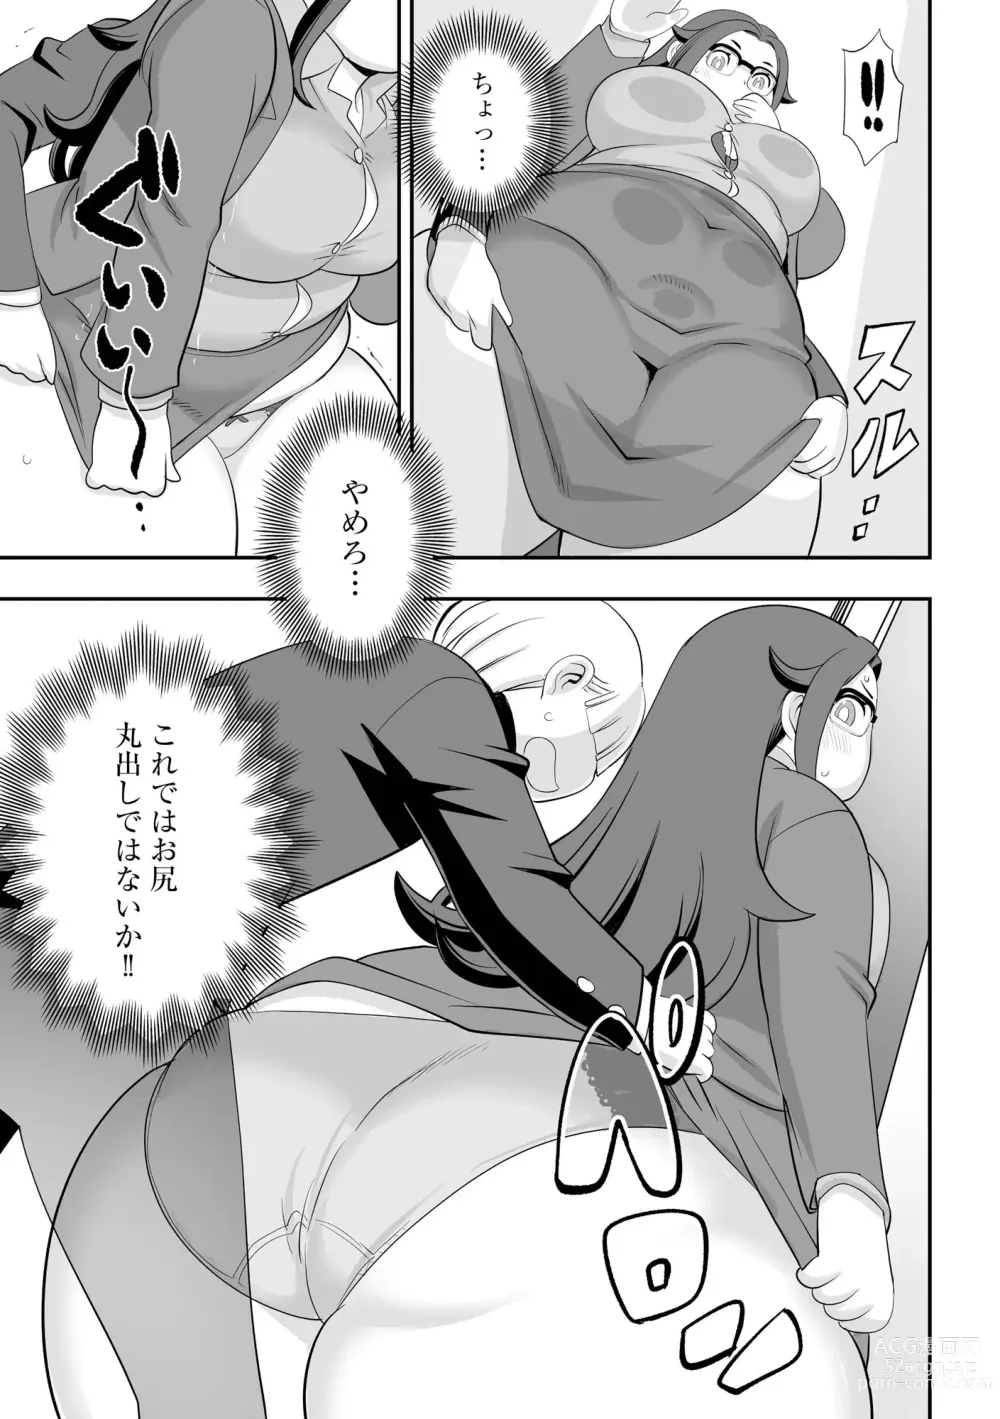 Page 135 of manga Chikan Etsuraku Ochi